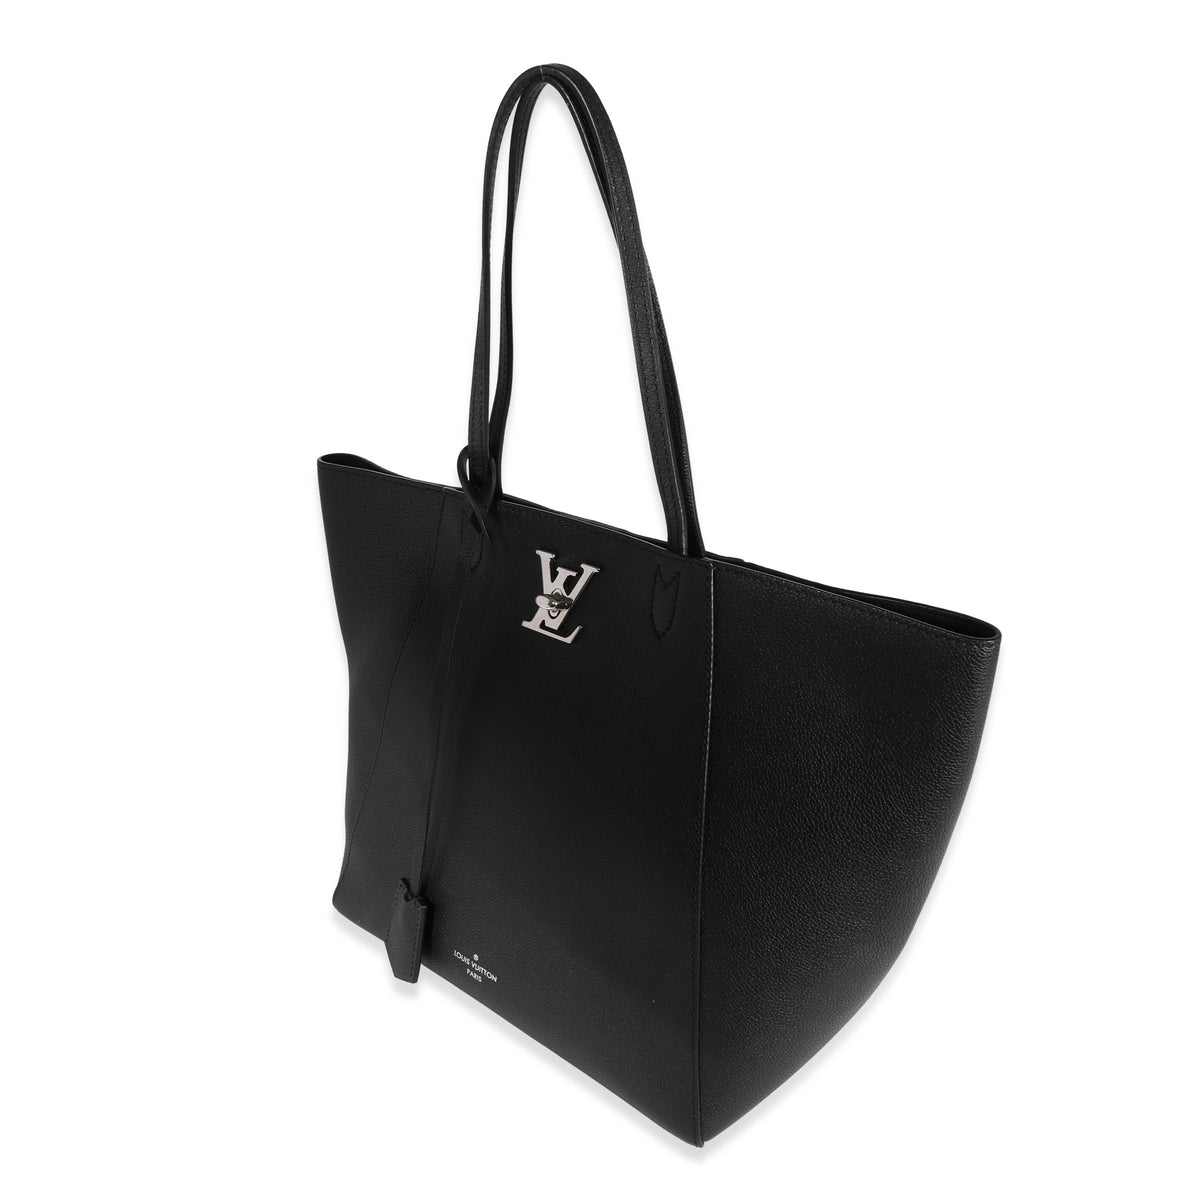 White Louis Vuitton LockMe Cabas Tote Bag